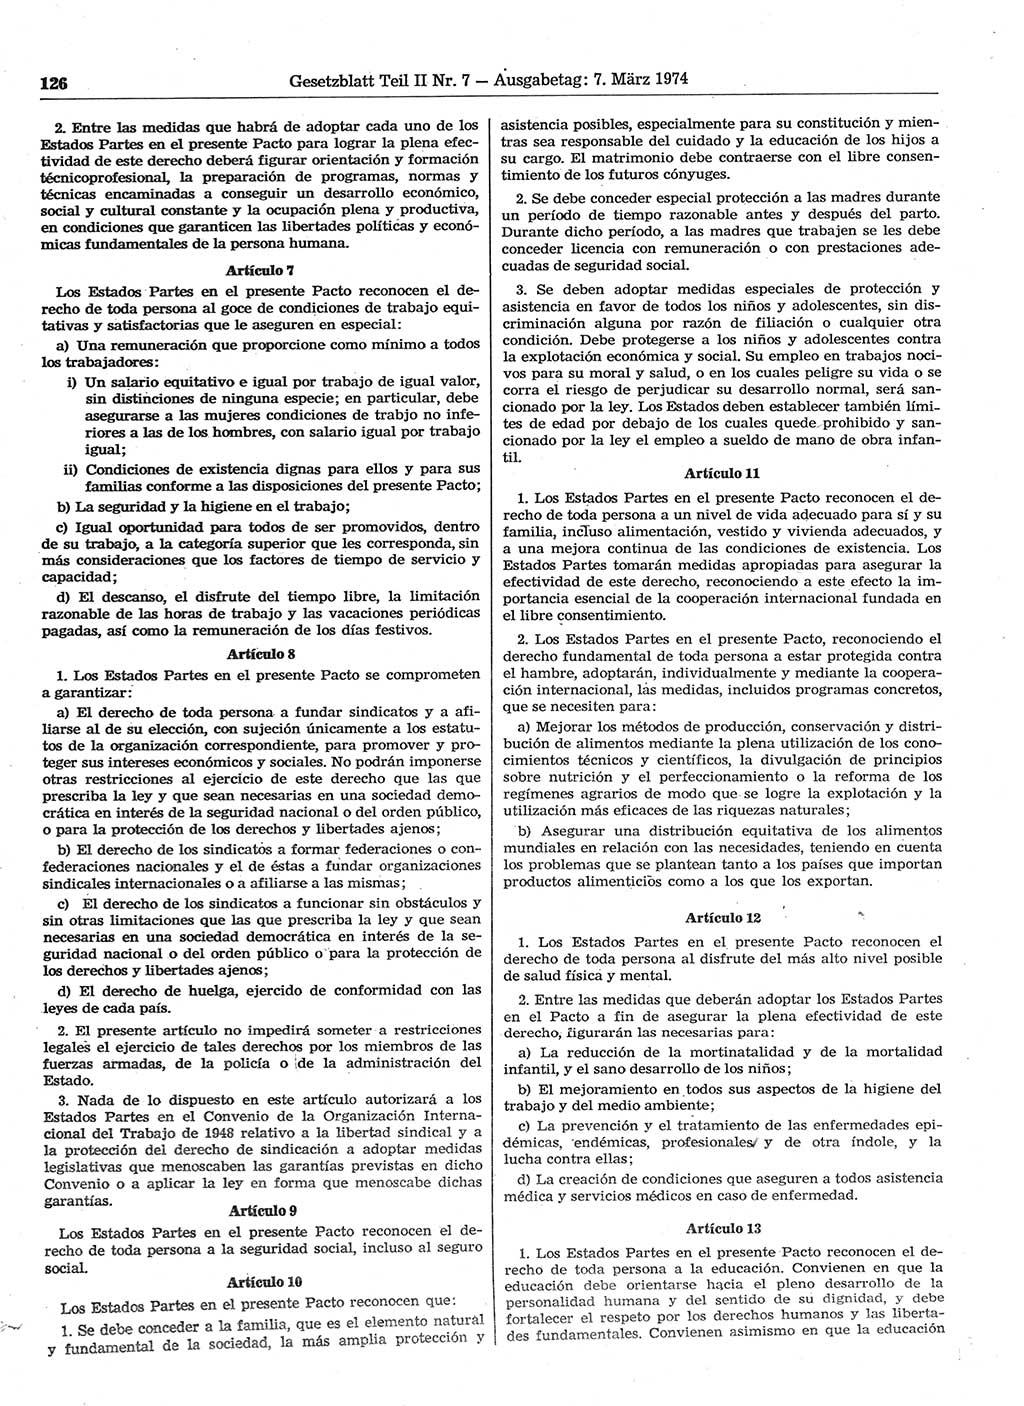 Gesetzblatt (GBl.) der Deutschen Demokratischen Republik (DDR) Teil ⅠⅠ 1974, Seite 126 (GBl. DDR ⅠⅠ 1974, S. 126)